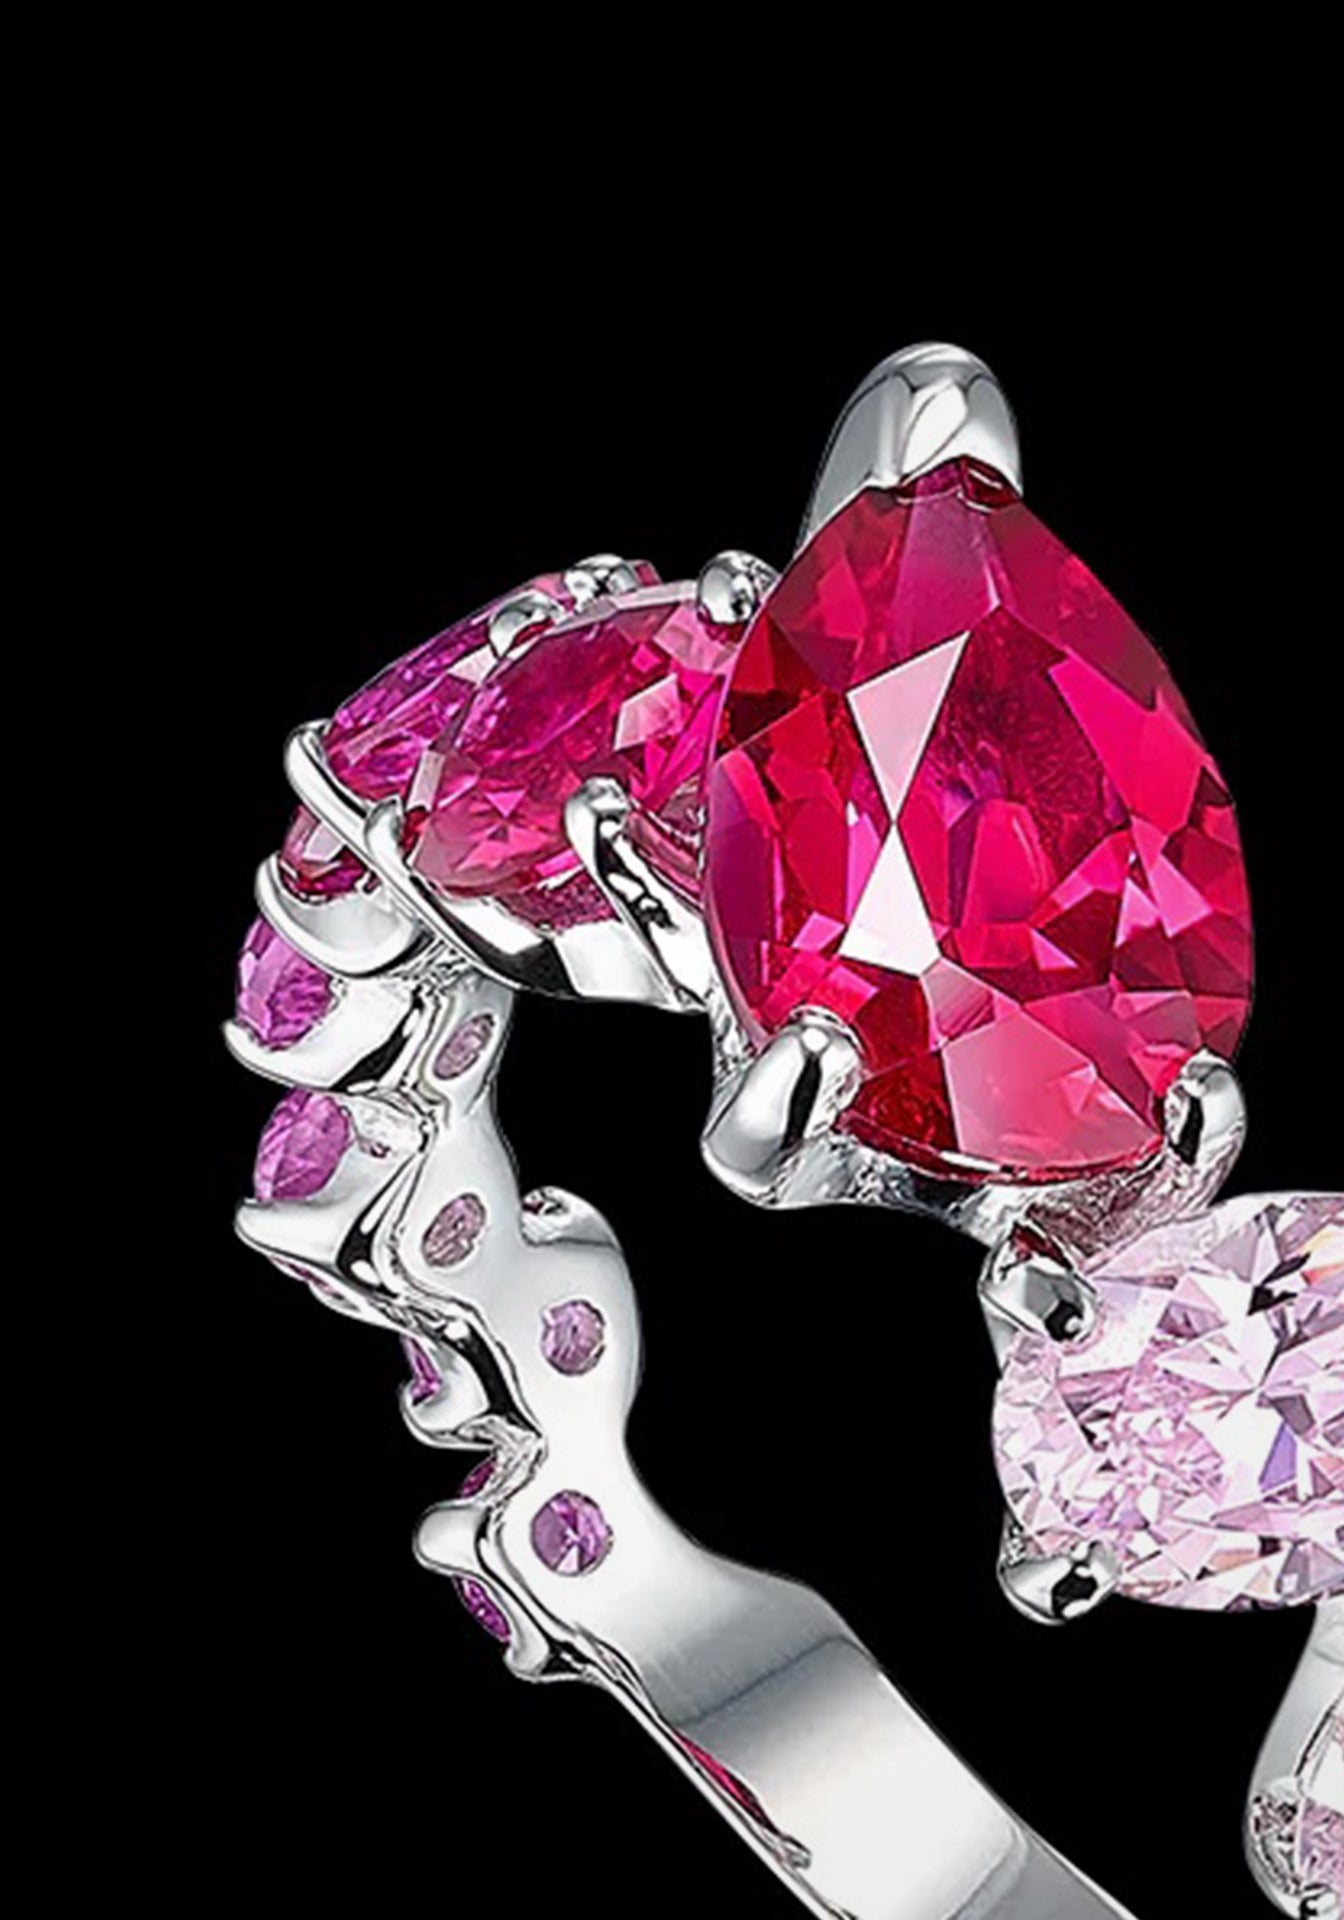 Ombré Nova Starburst, 18K White Gold + Pink Sapphire Ring